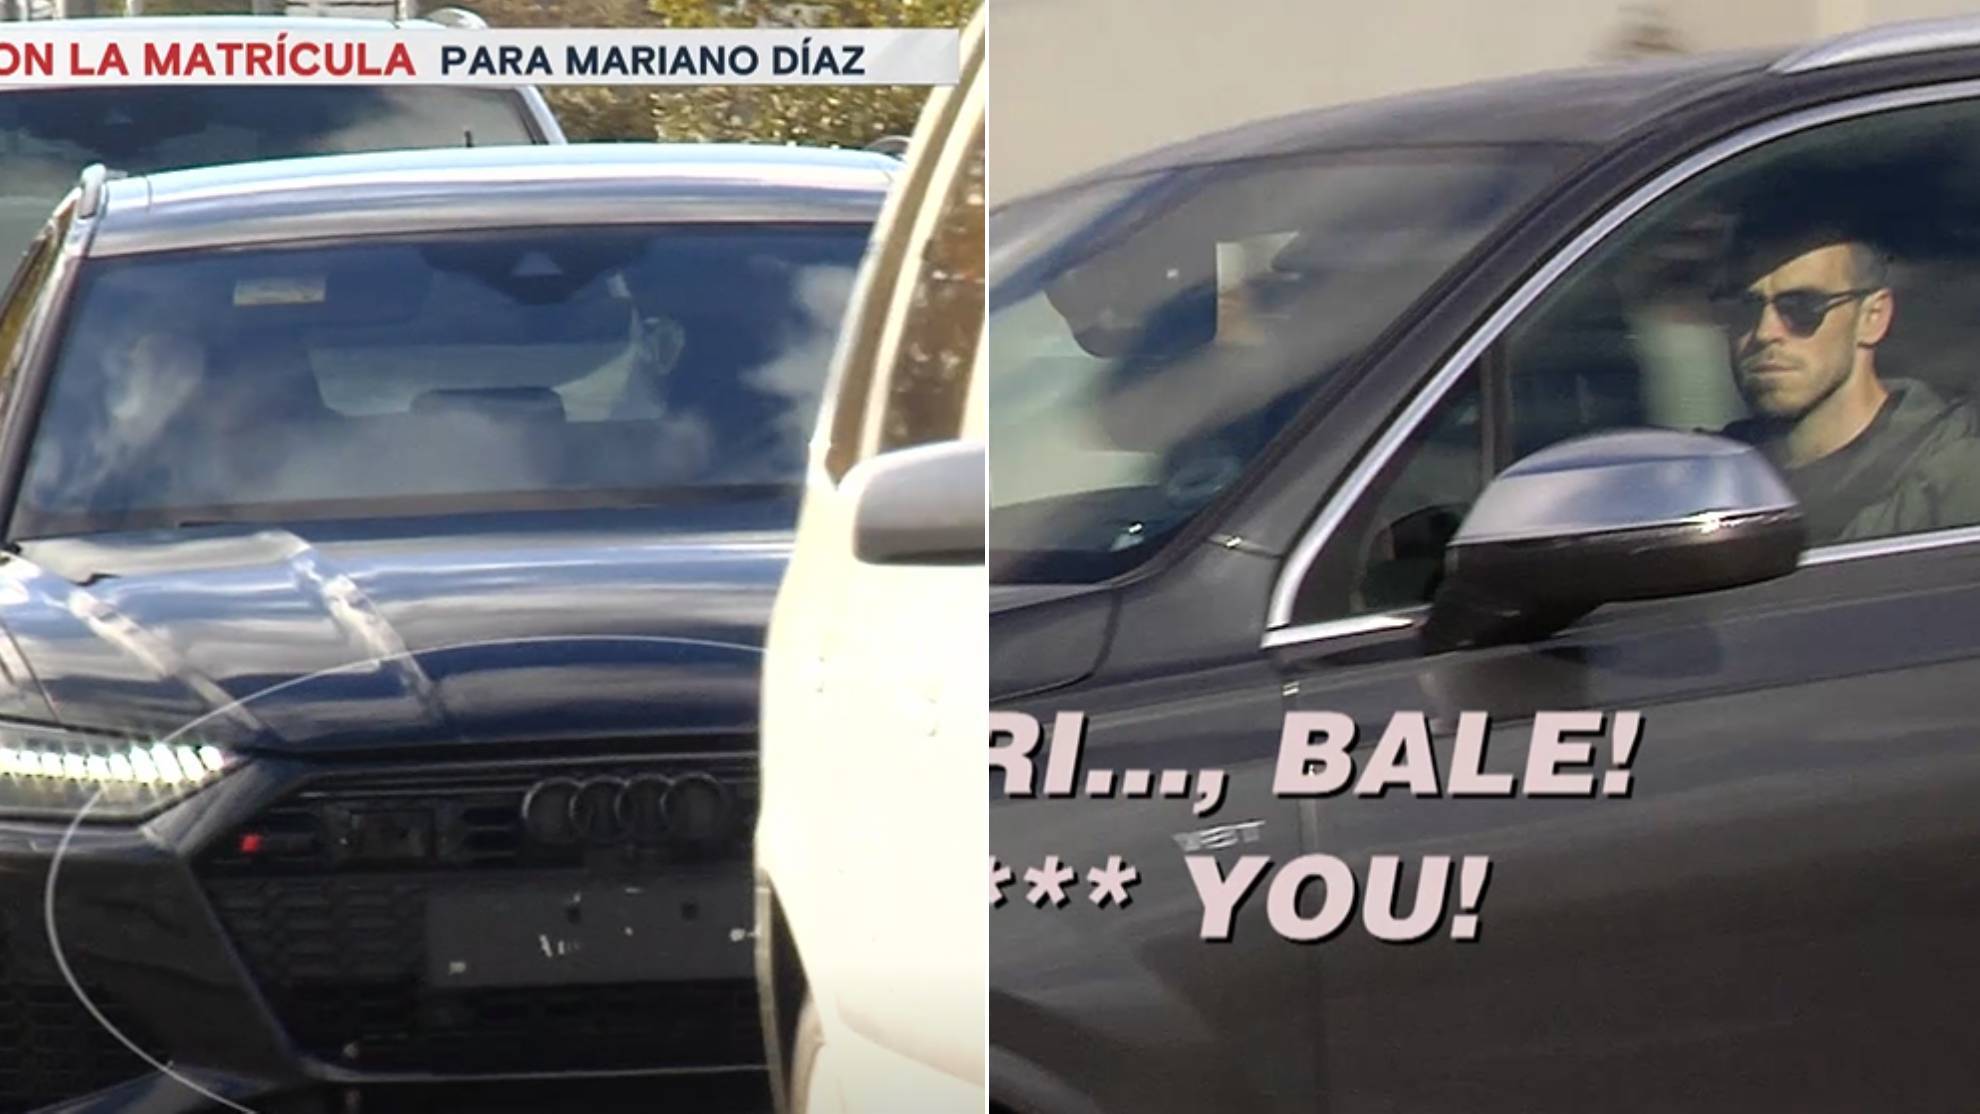 La rotonda de Valdebebas: indignantes insultos a Bale... y la matrícula de Mariano